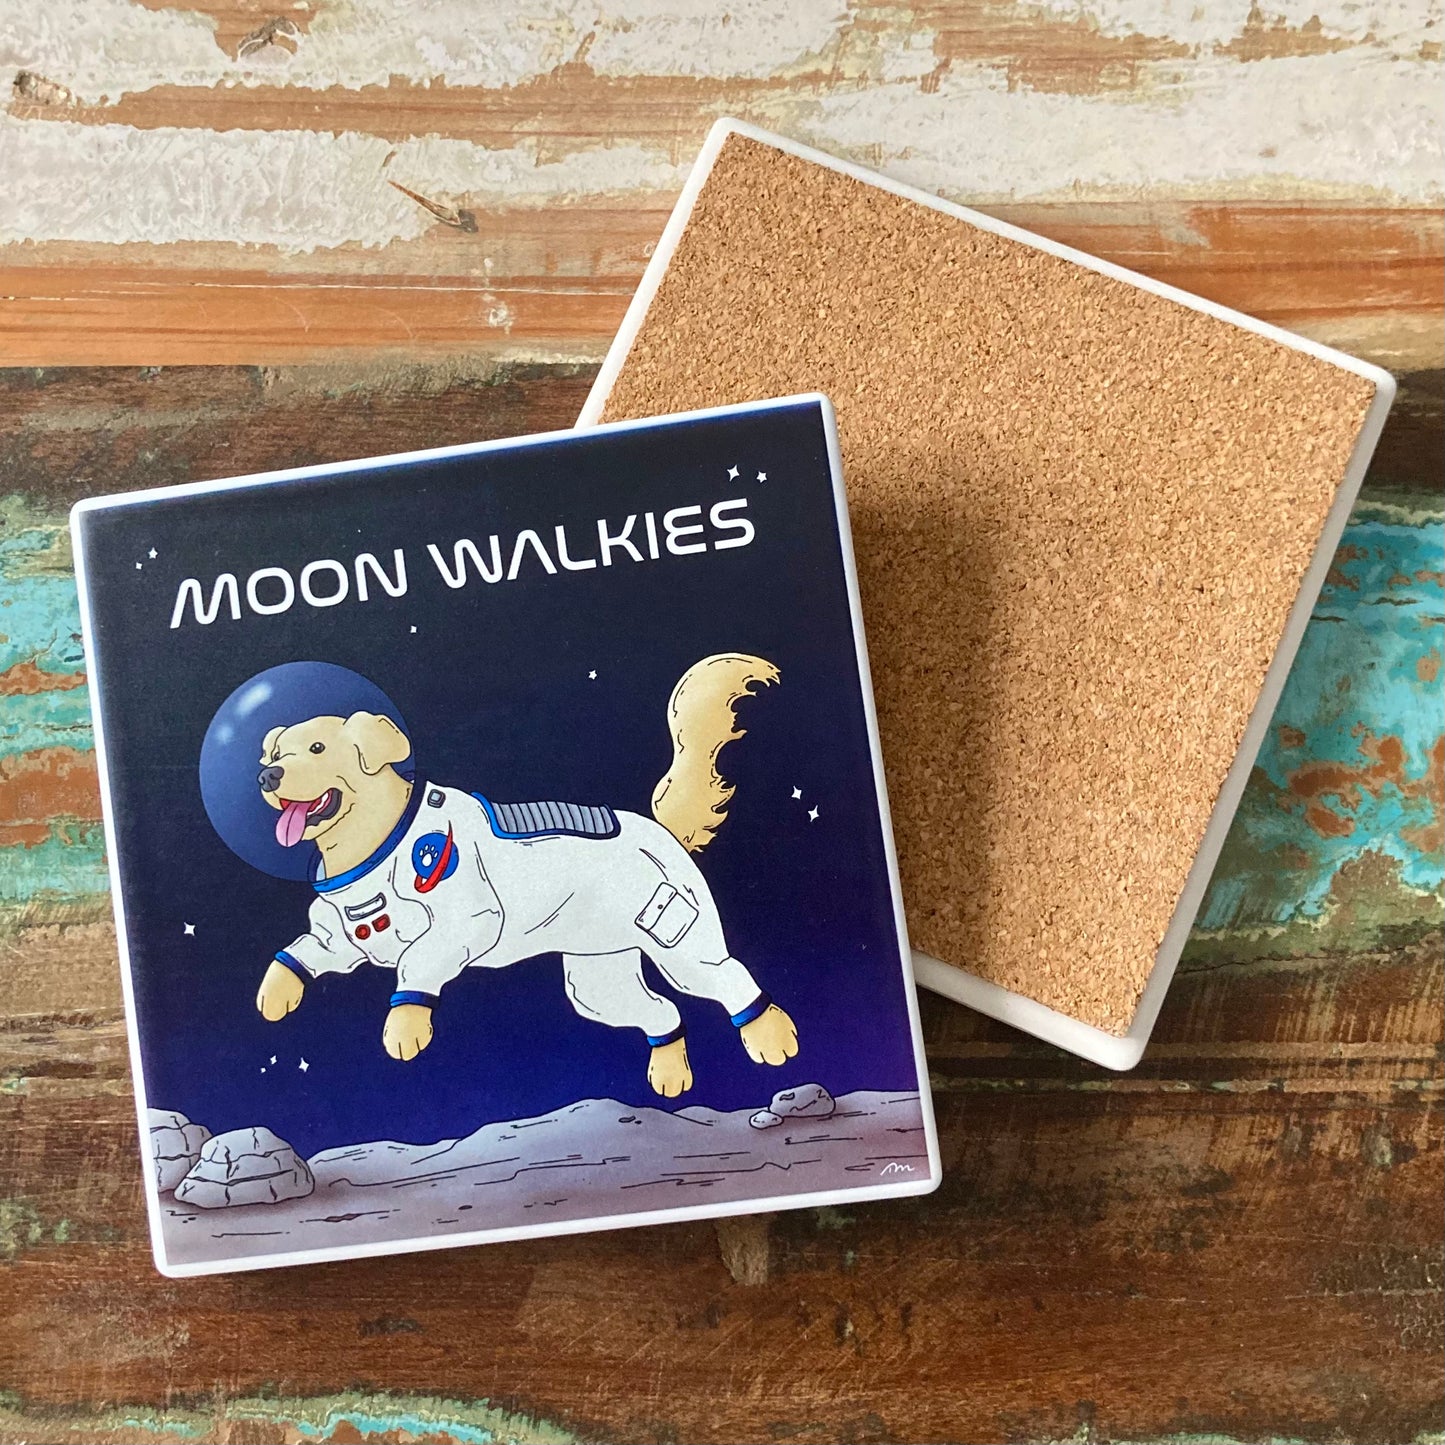 Moon Walkies Astronaut Dog Ceramic Coaster